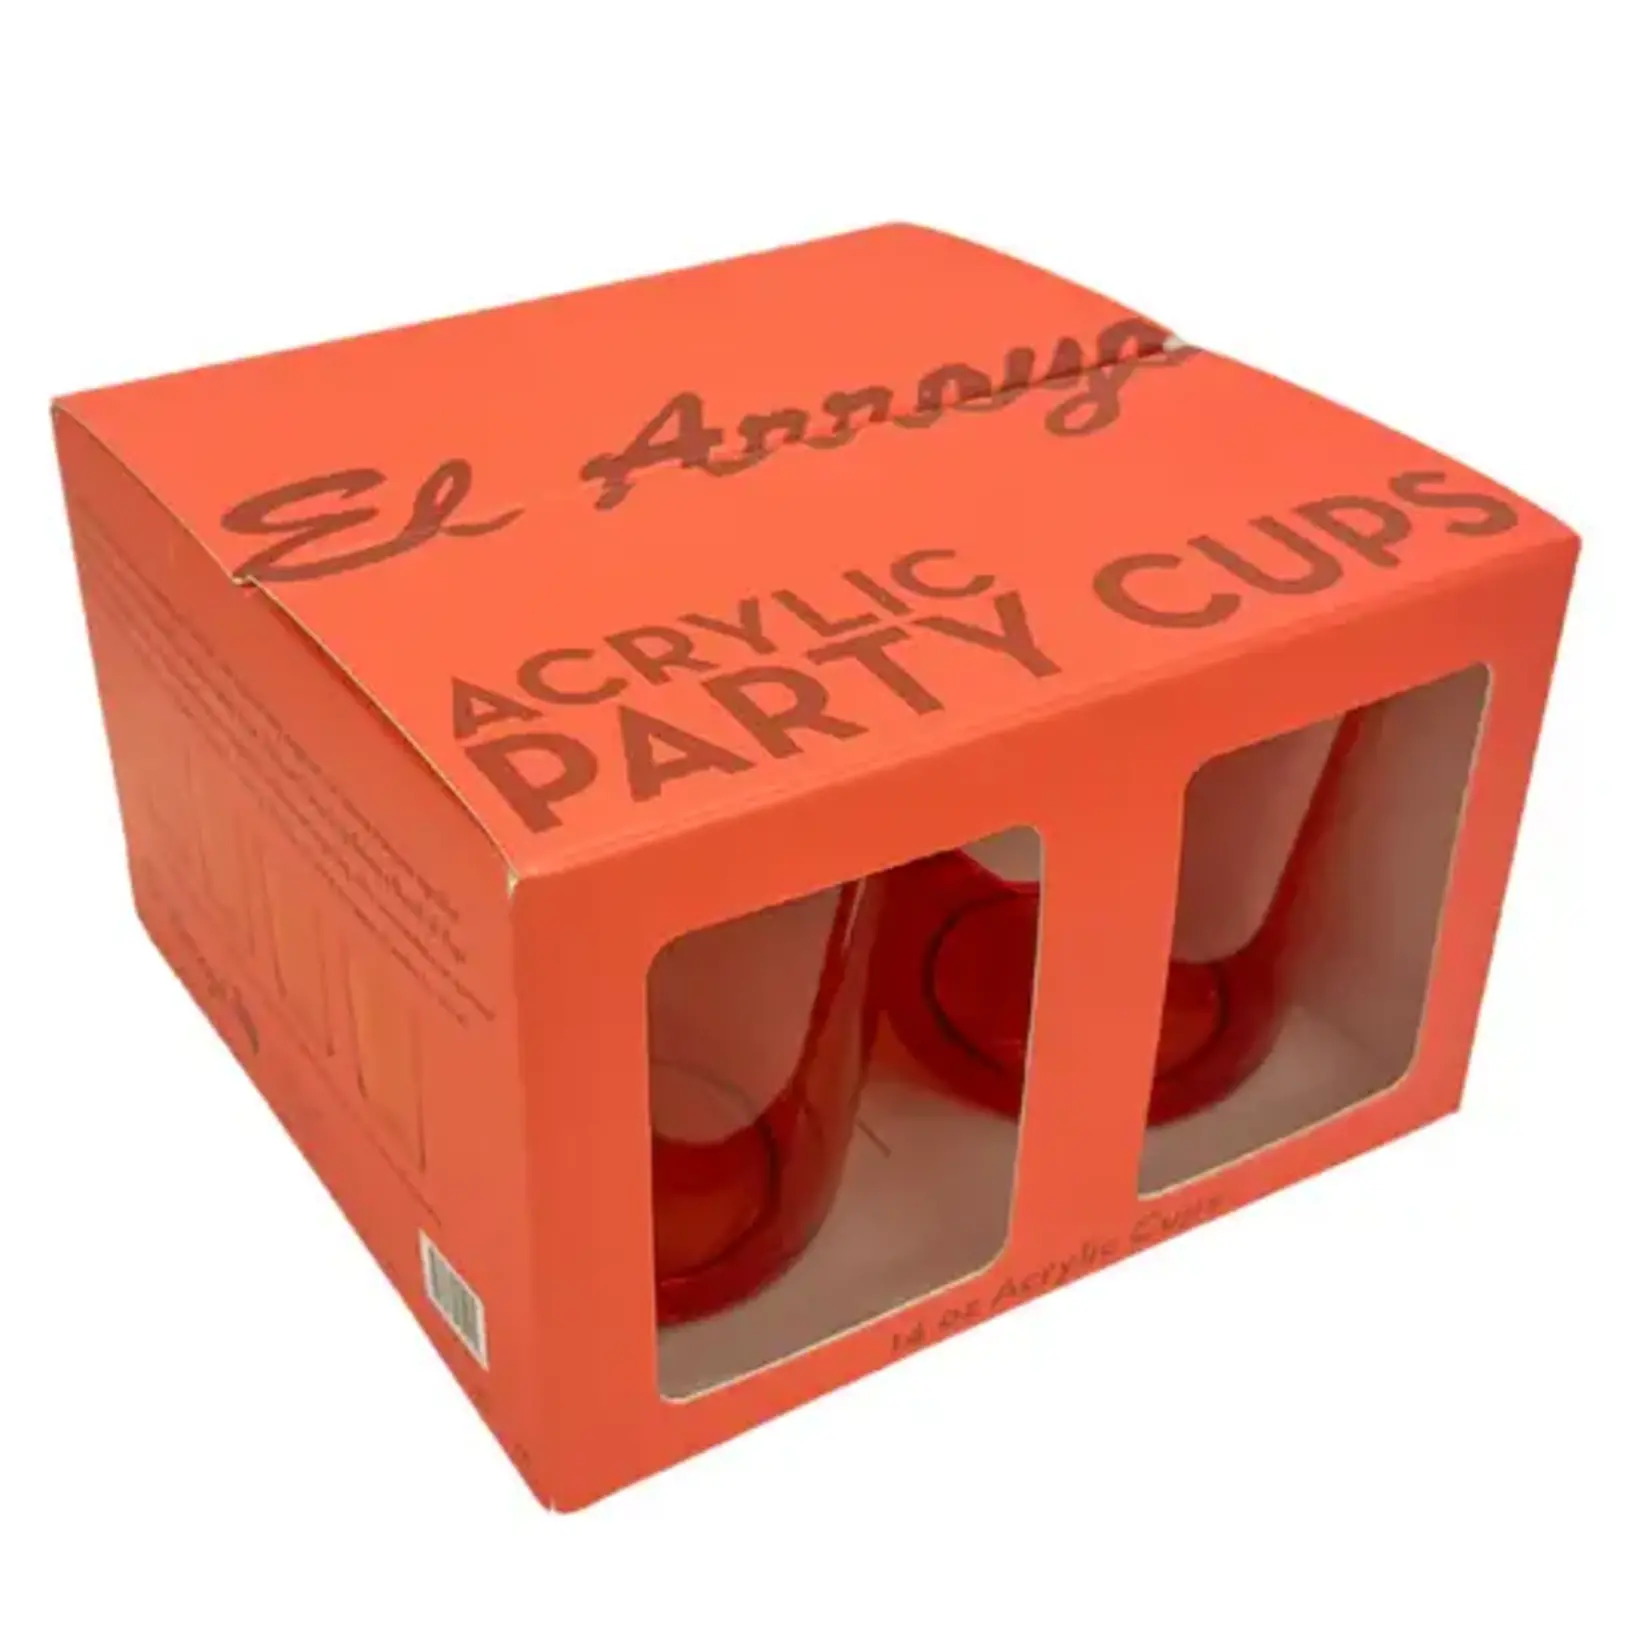 El Arroyo Set of 4 Acrylic Cups - Coral